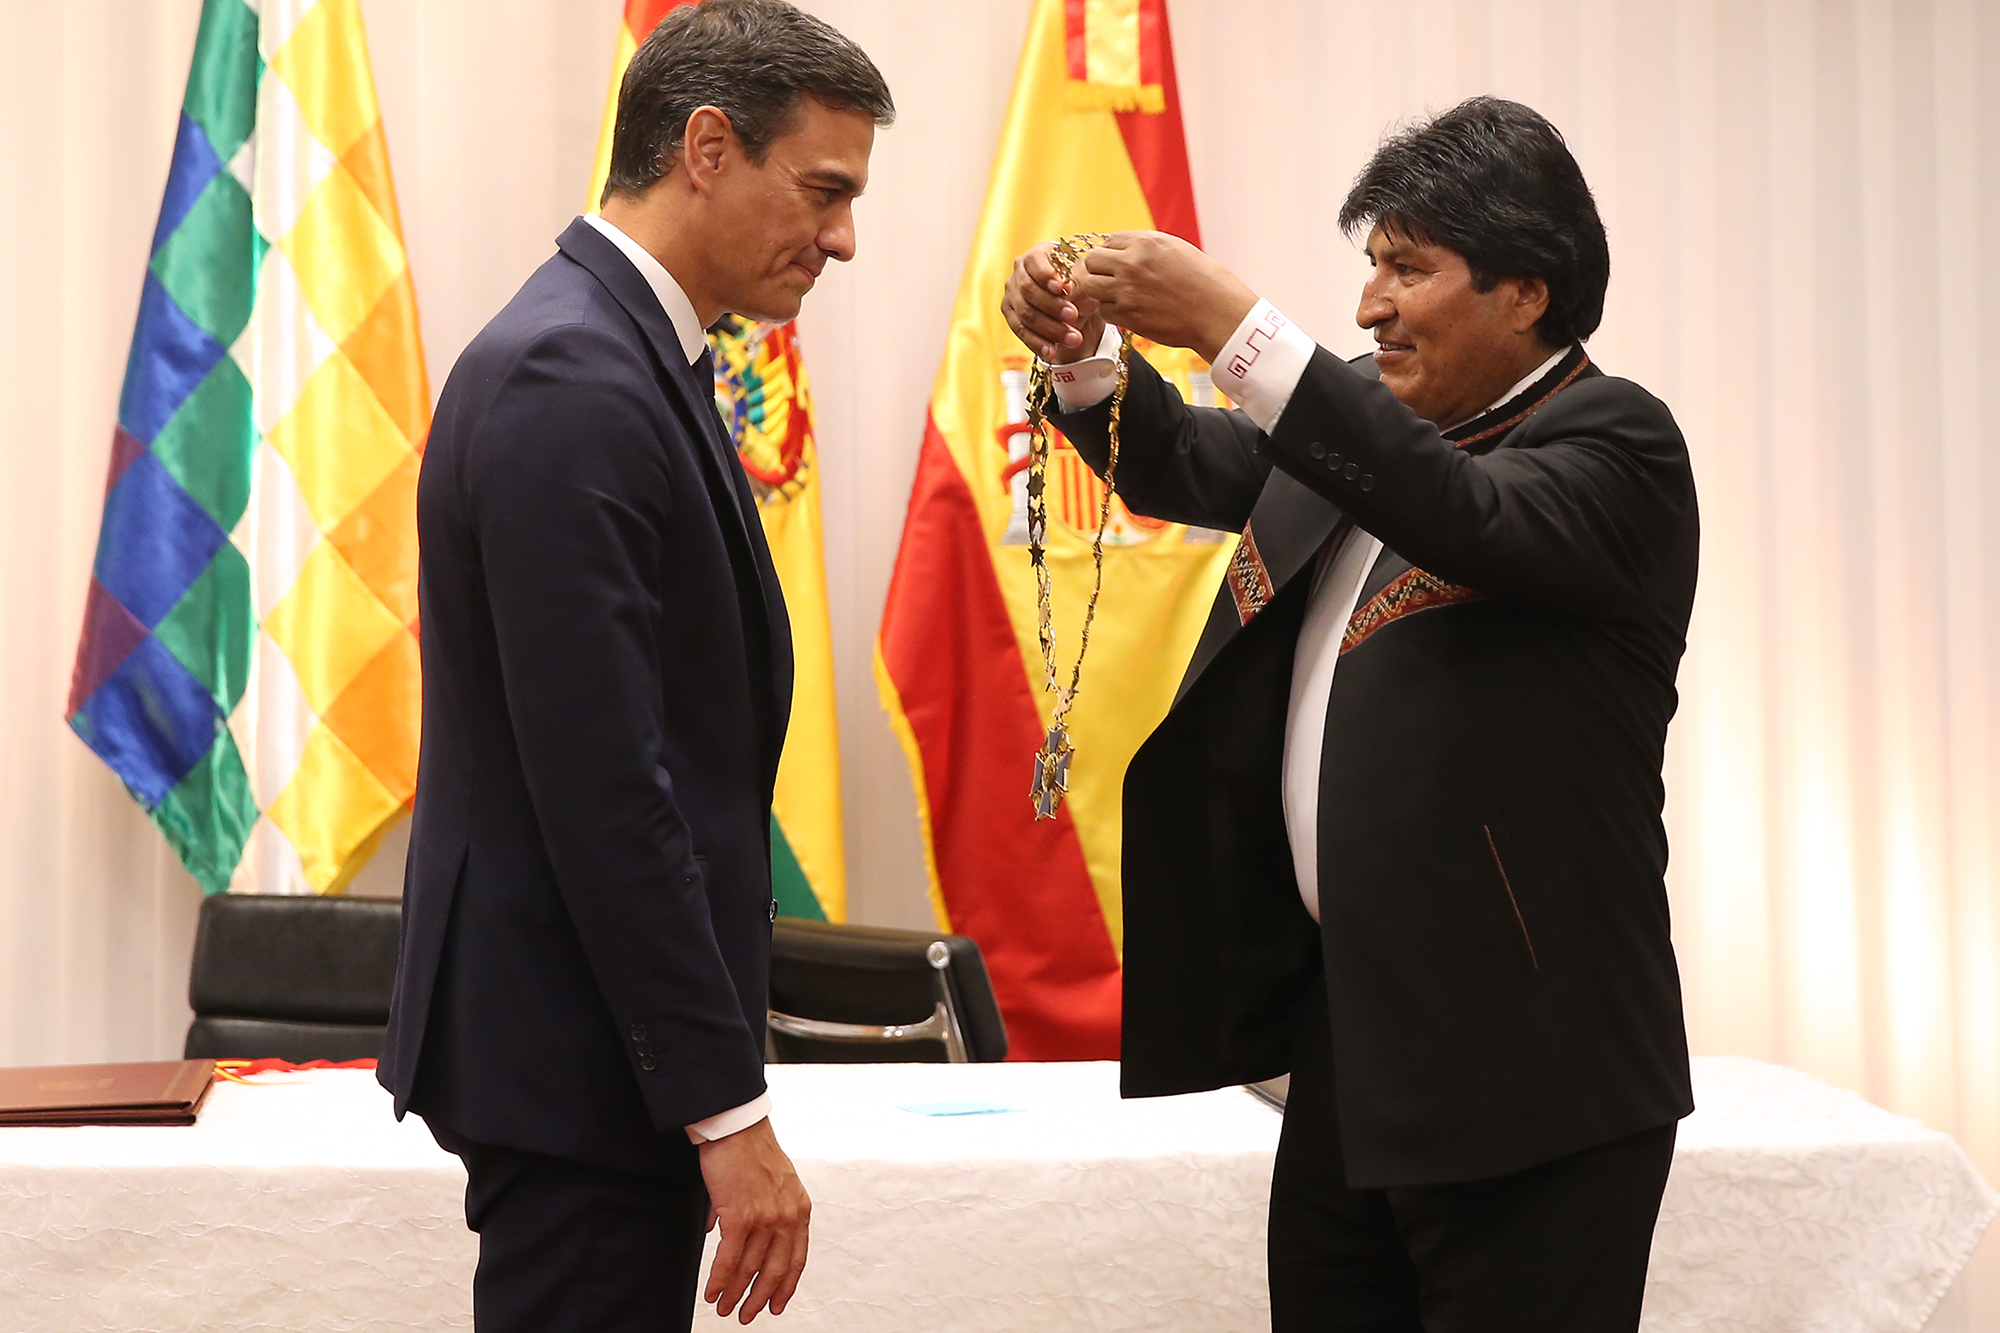 29/08/2018. Viaje del presidente a Bolivia. El presidente de Bolivia, Evo Morales, impone al presidente español, Pedro Sánchez, el símbolo a...